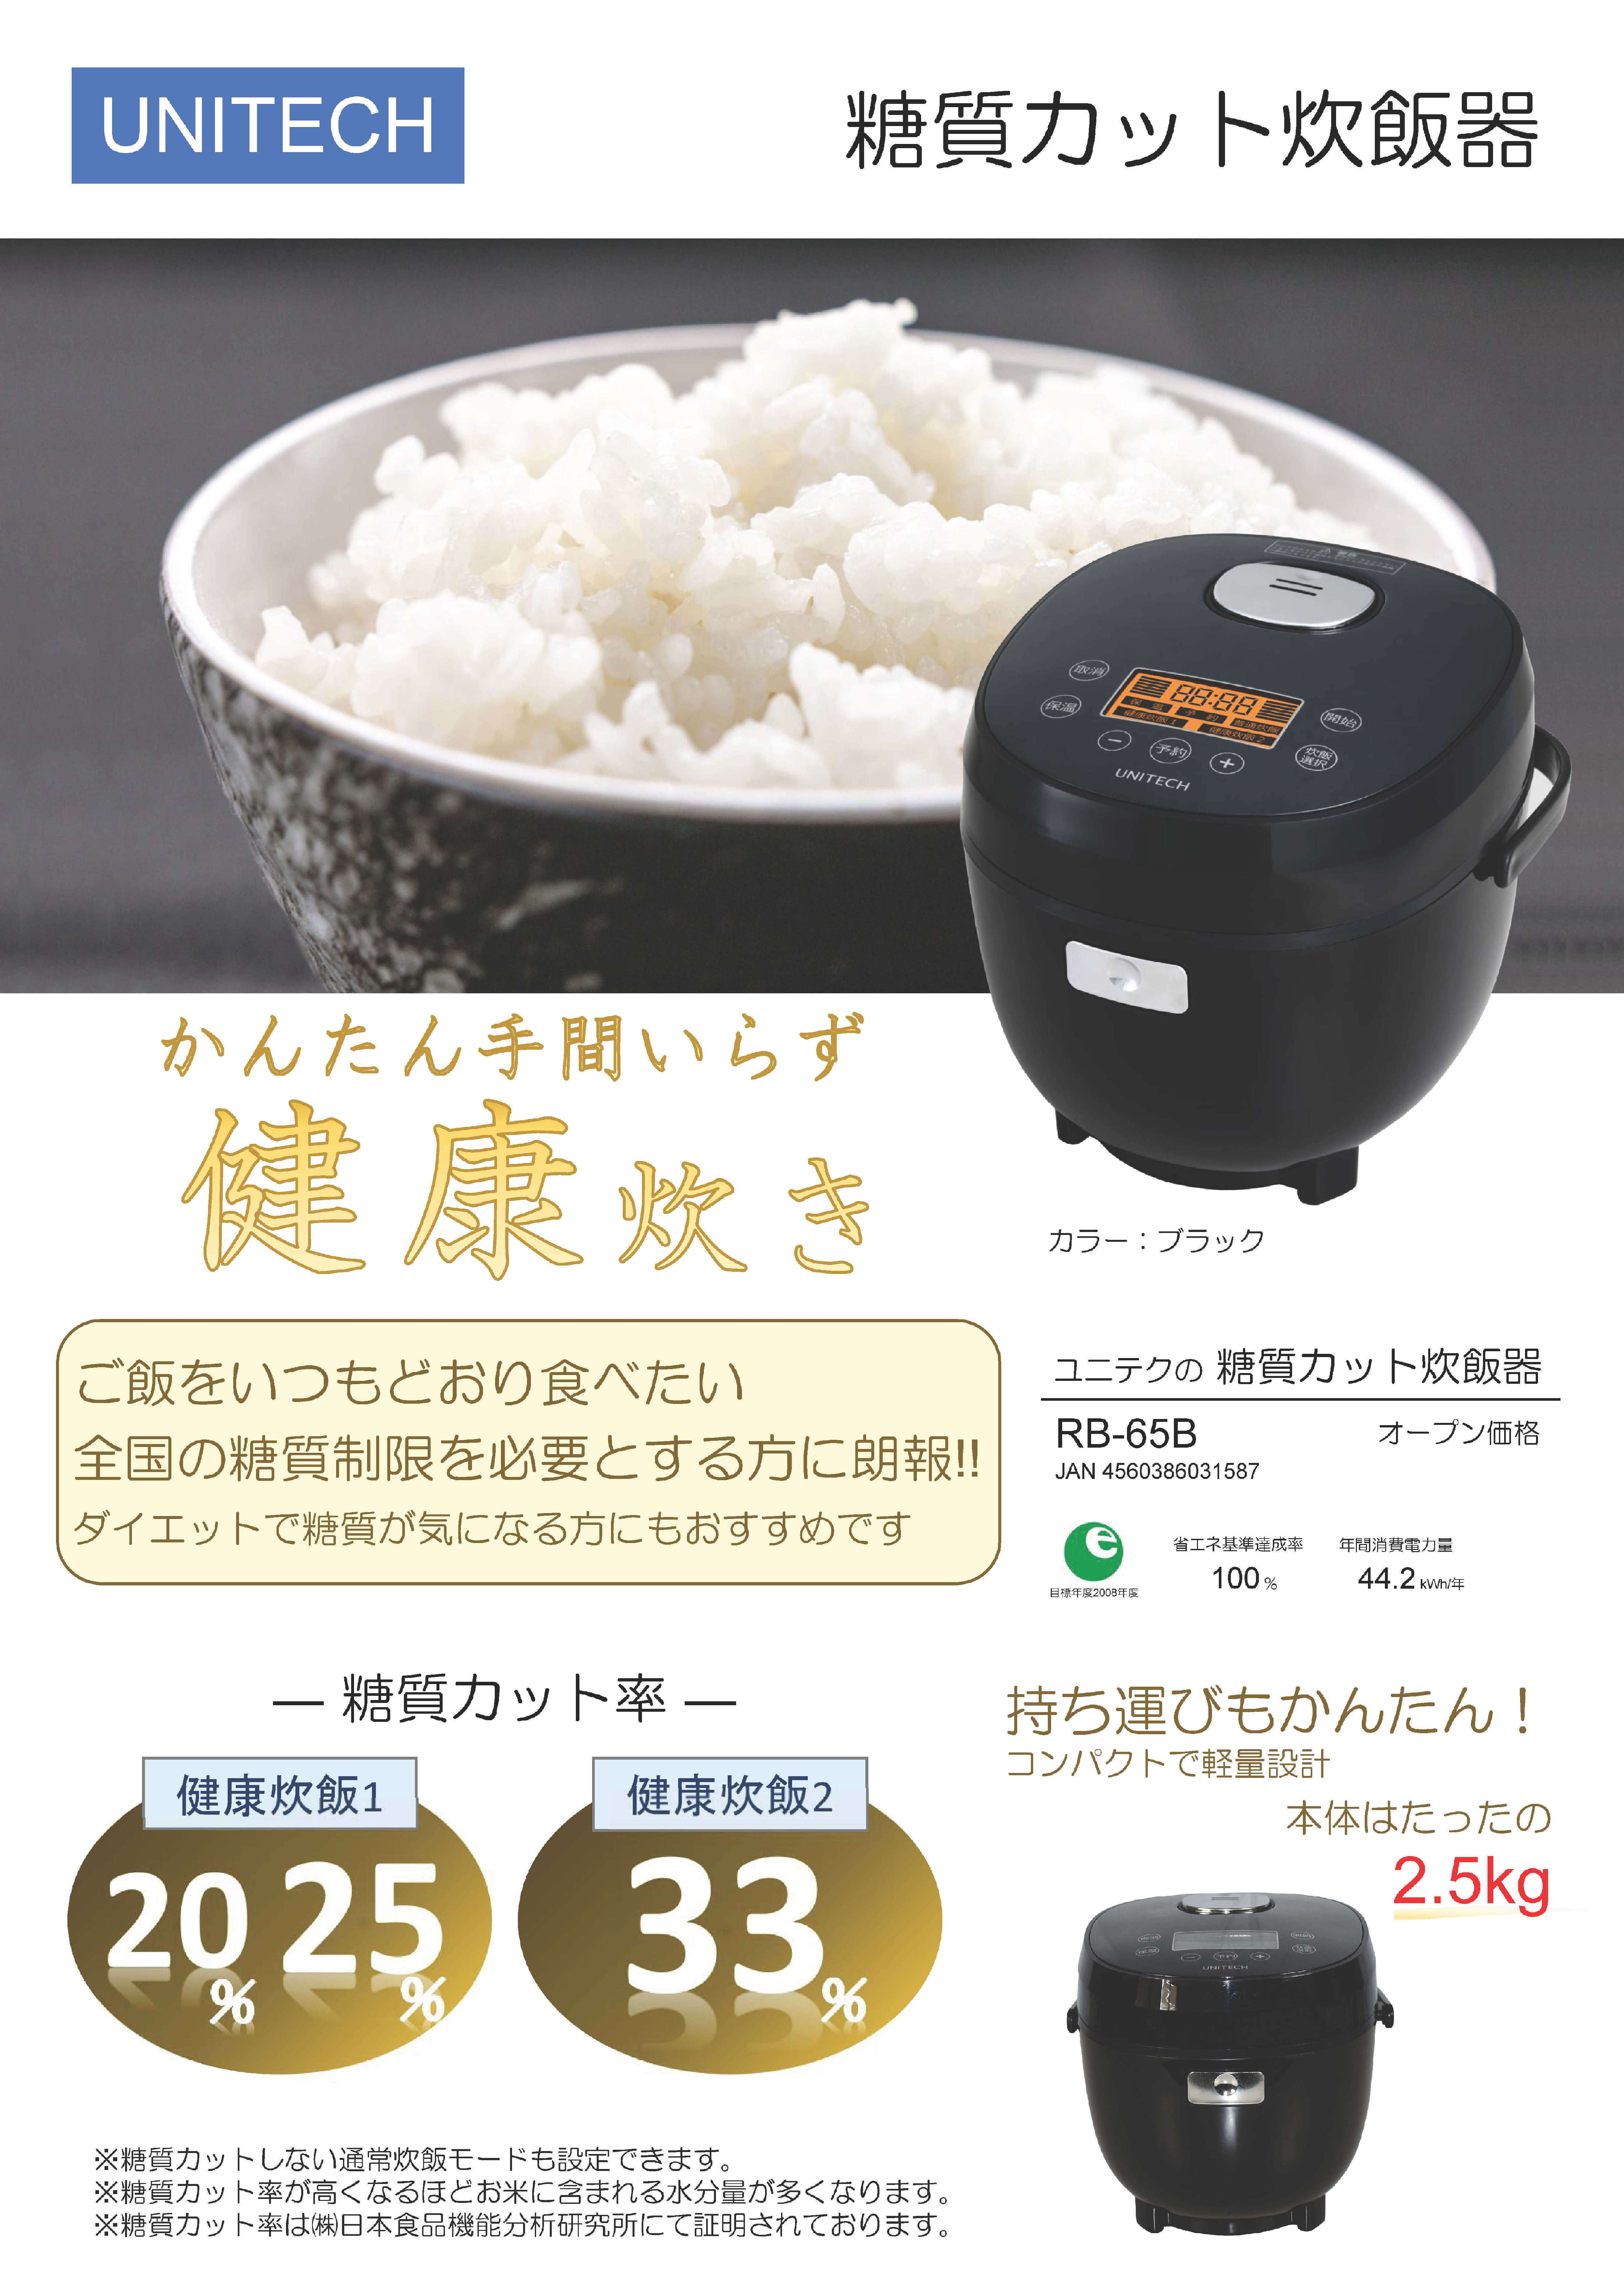 ユニテク 糖質カット炊飯器 RB-65B 3モード切替 最大33パーセント糖質カット 3.5合炊き ダイエット 炭水化物ダイエット コンパクト - 1